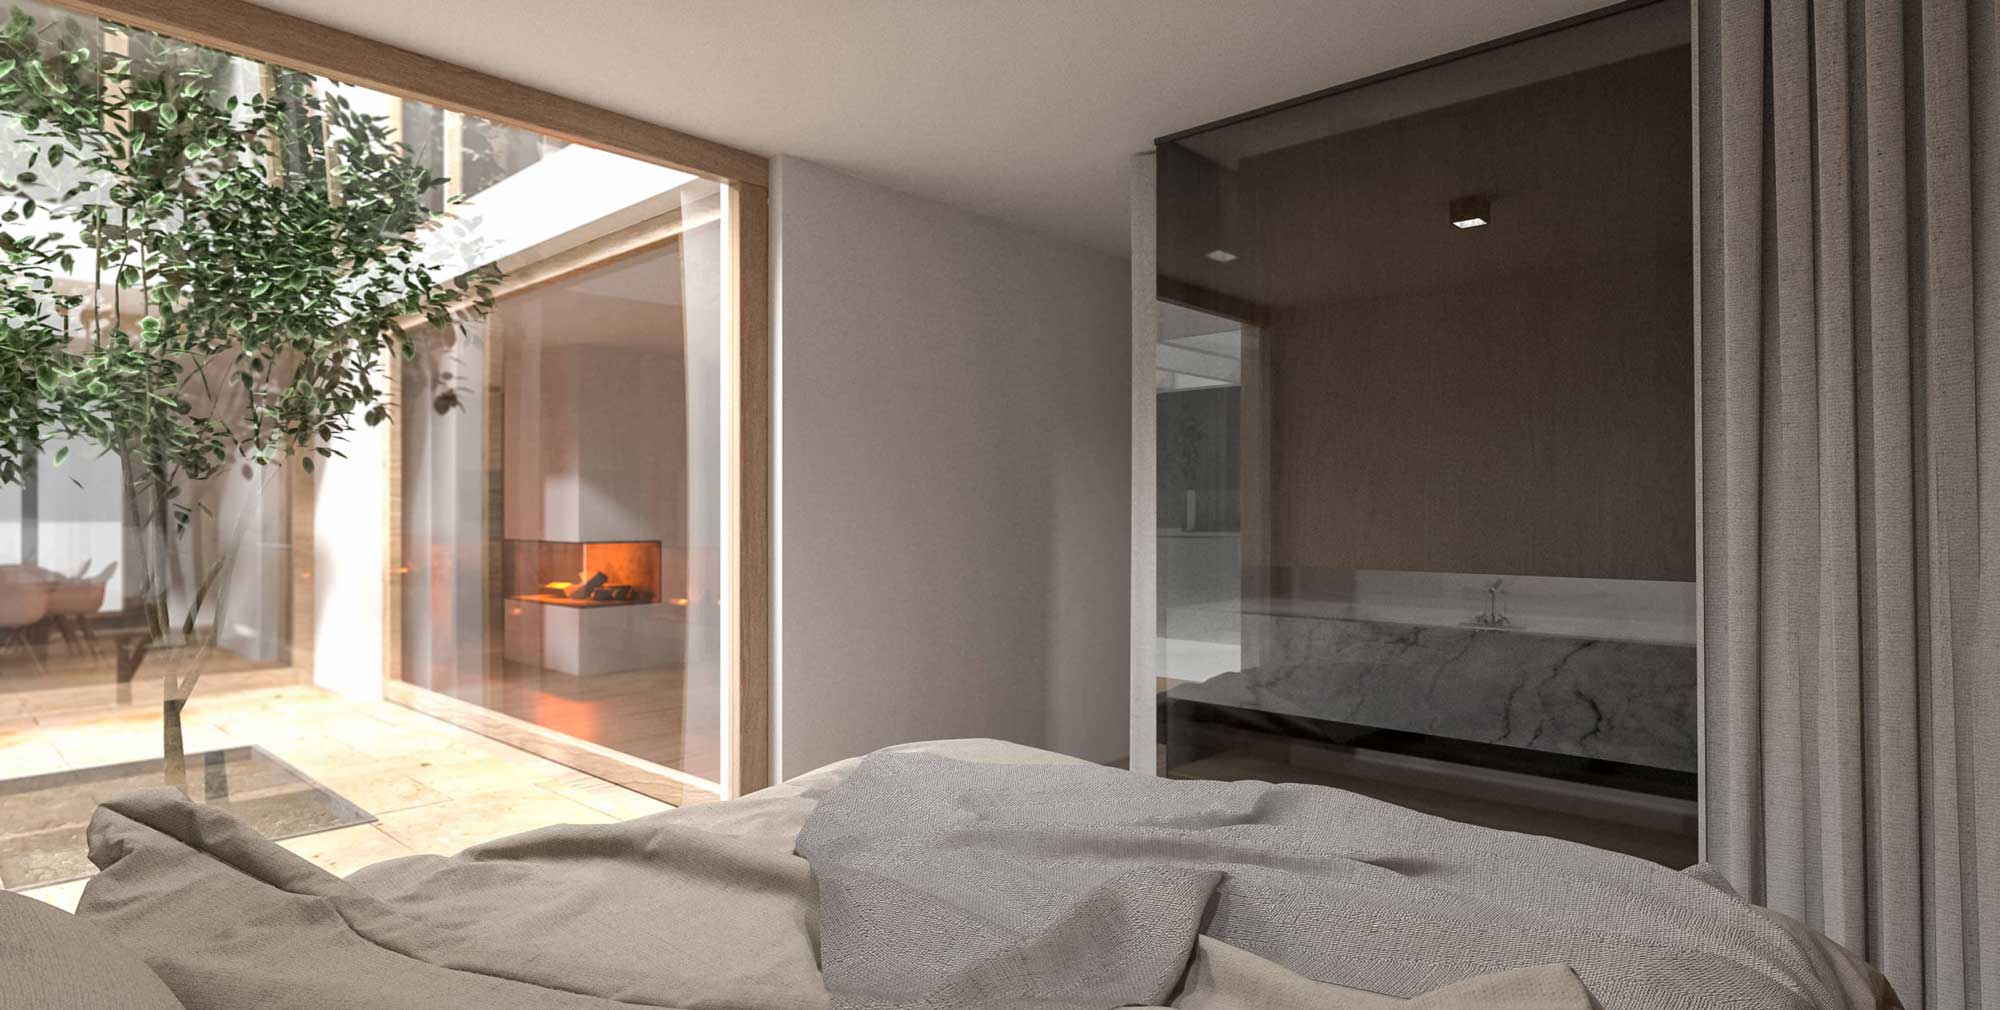 3D Visualisierung Schlafzimmer | Architekturprojekt Nähe München, Deutschland | Architektenhäuser